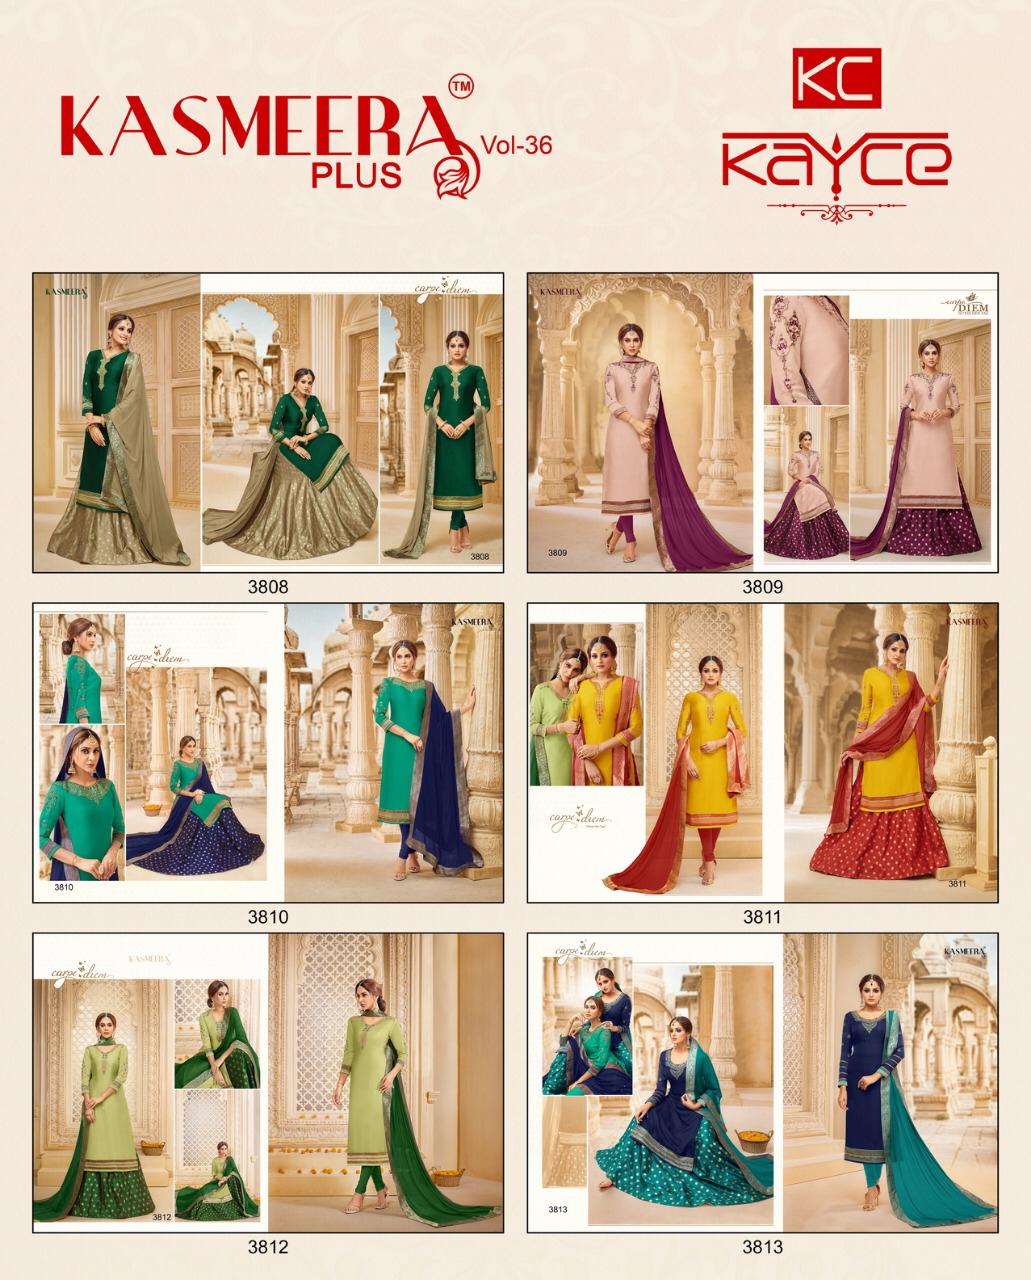 kasmeera plus vol 36 fancy colorful collection of salwaar suits